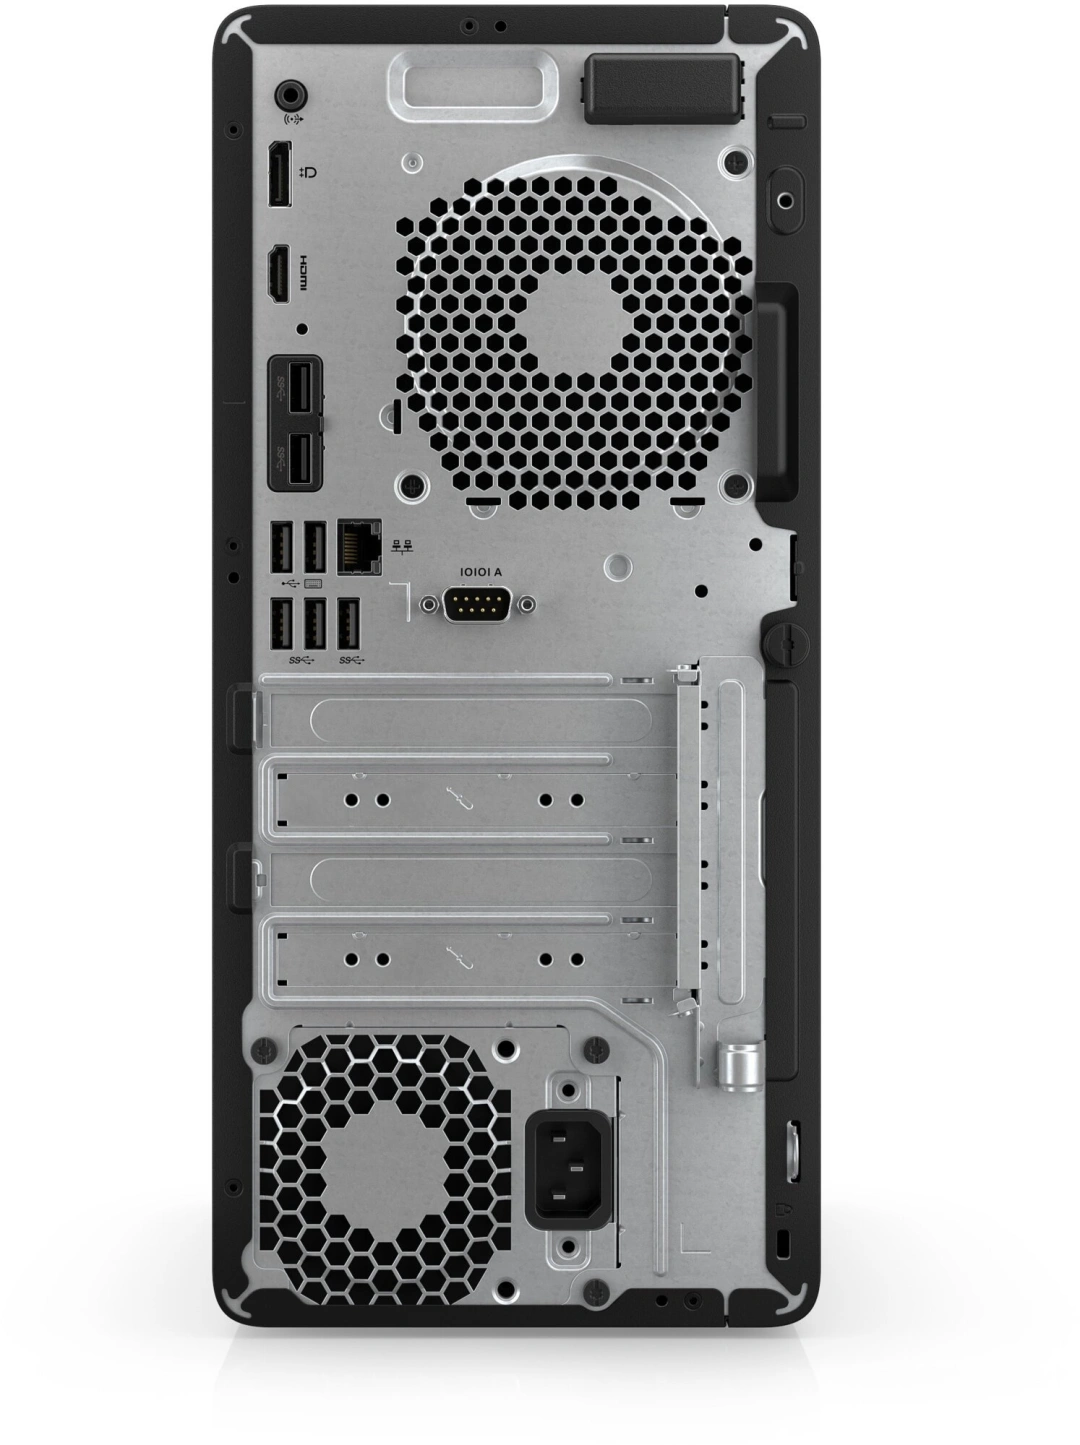 HP Pro Tower 400 G9, černá (629B1ET)